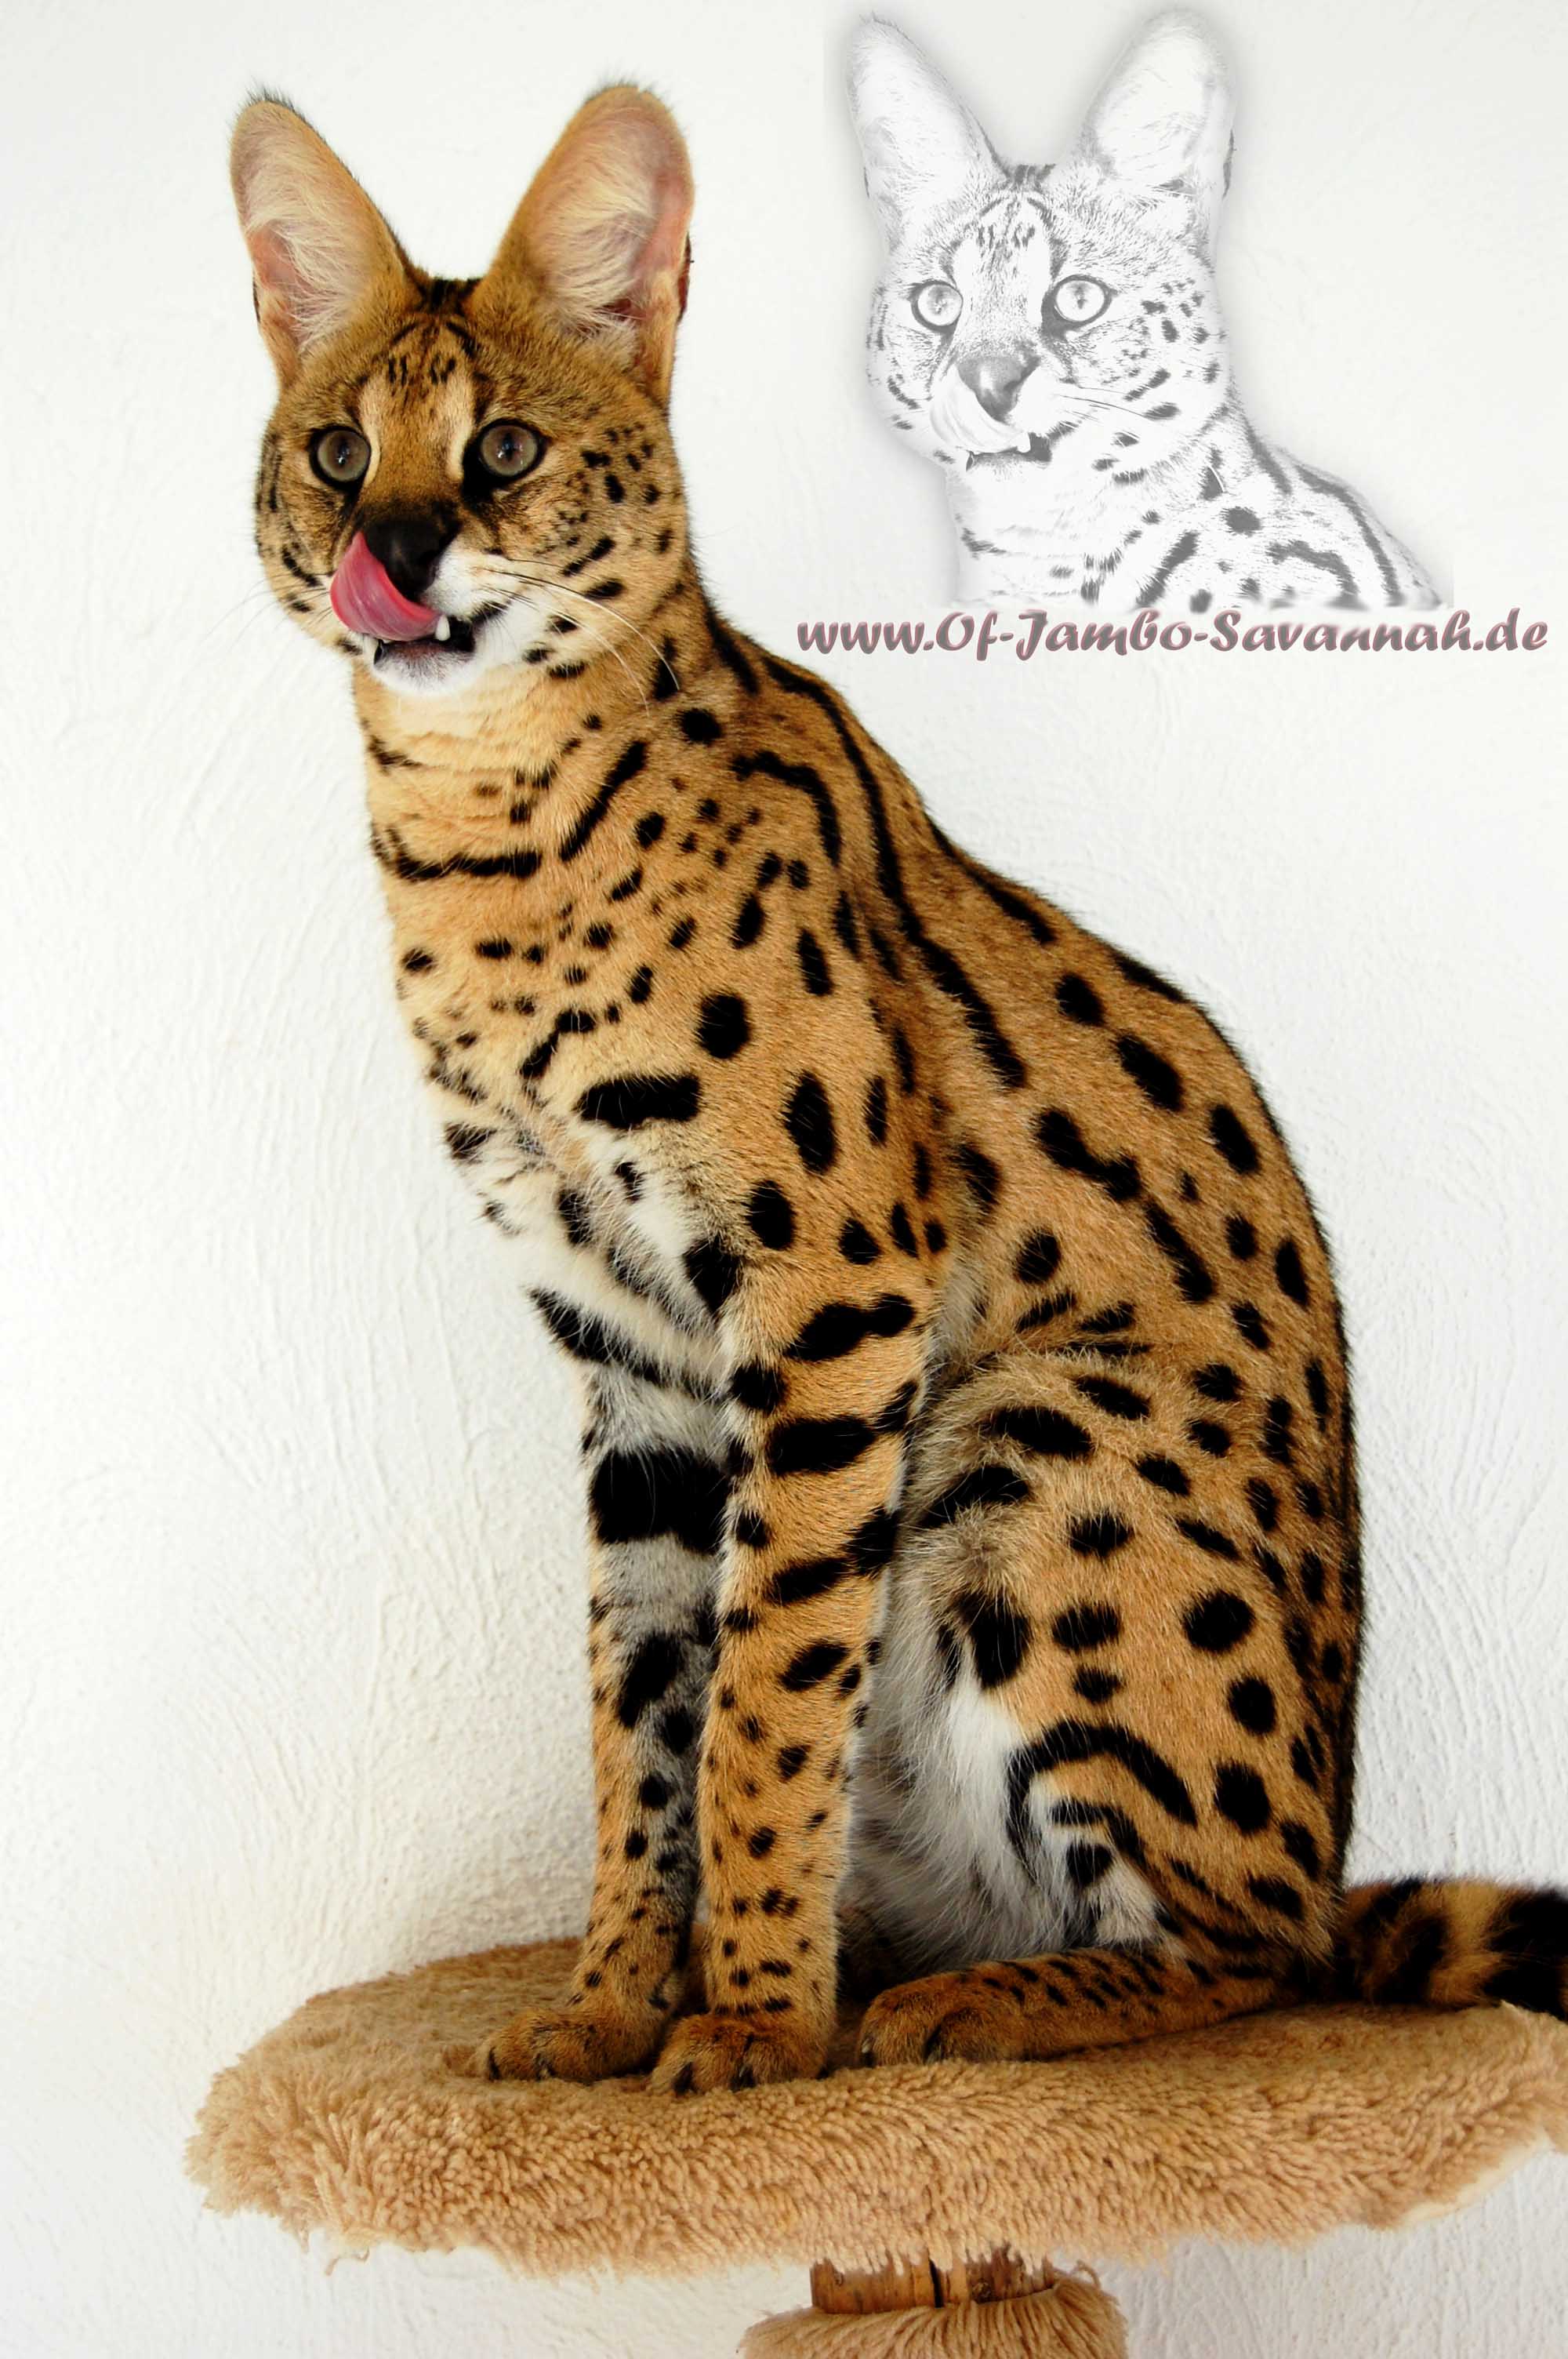 Servale sind eine der Wildkatzenarten, die zur Zucht der Savannah Cat eingesetzt werden.